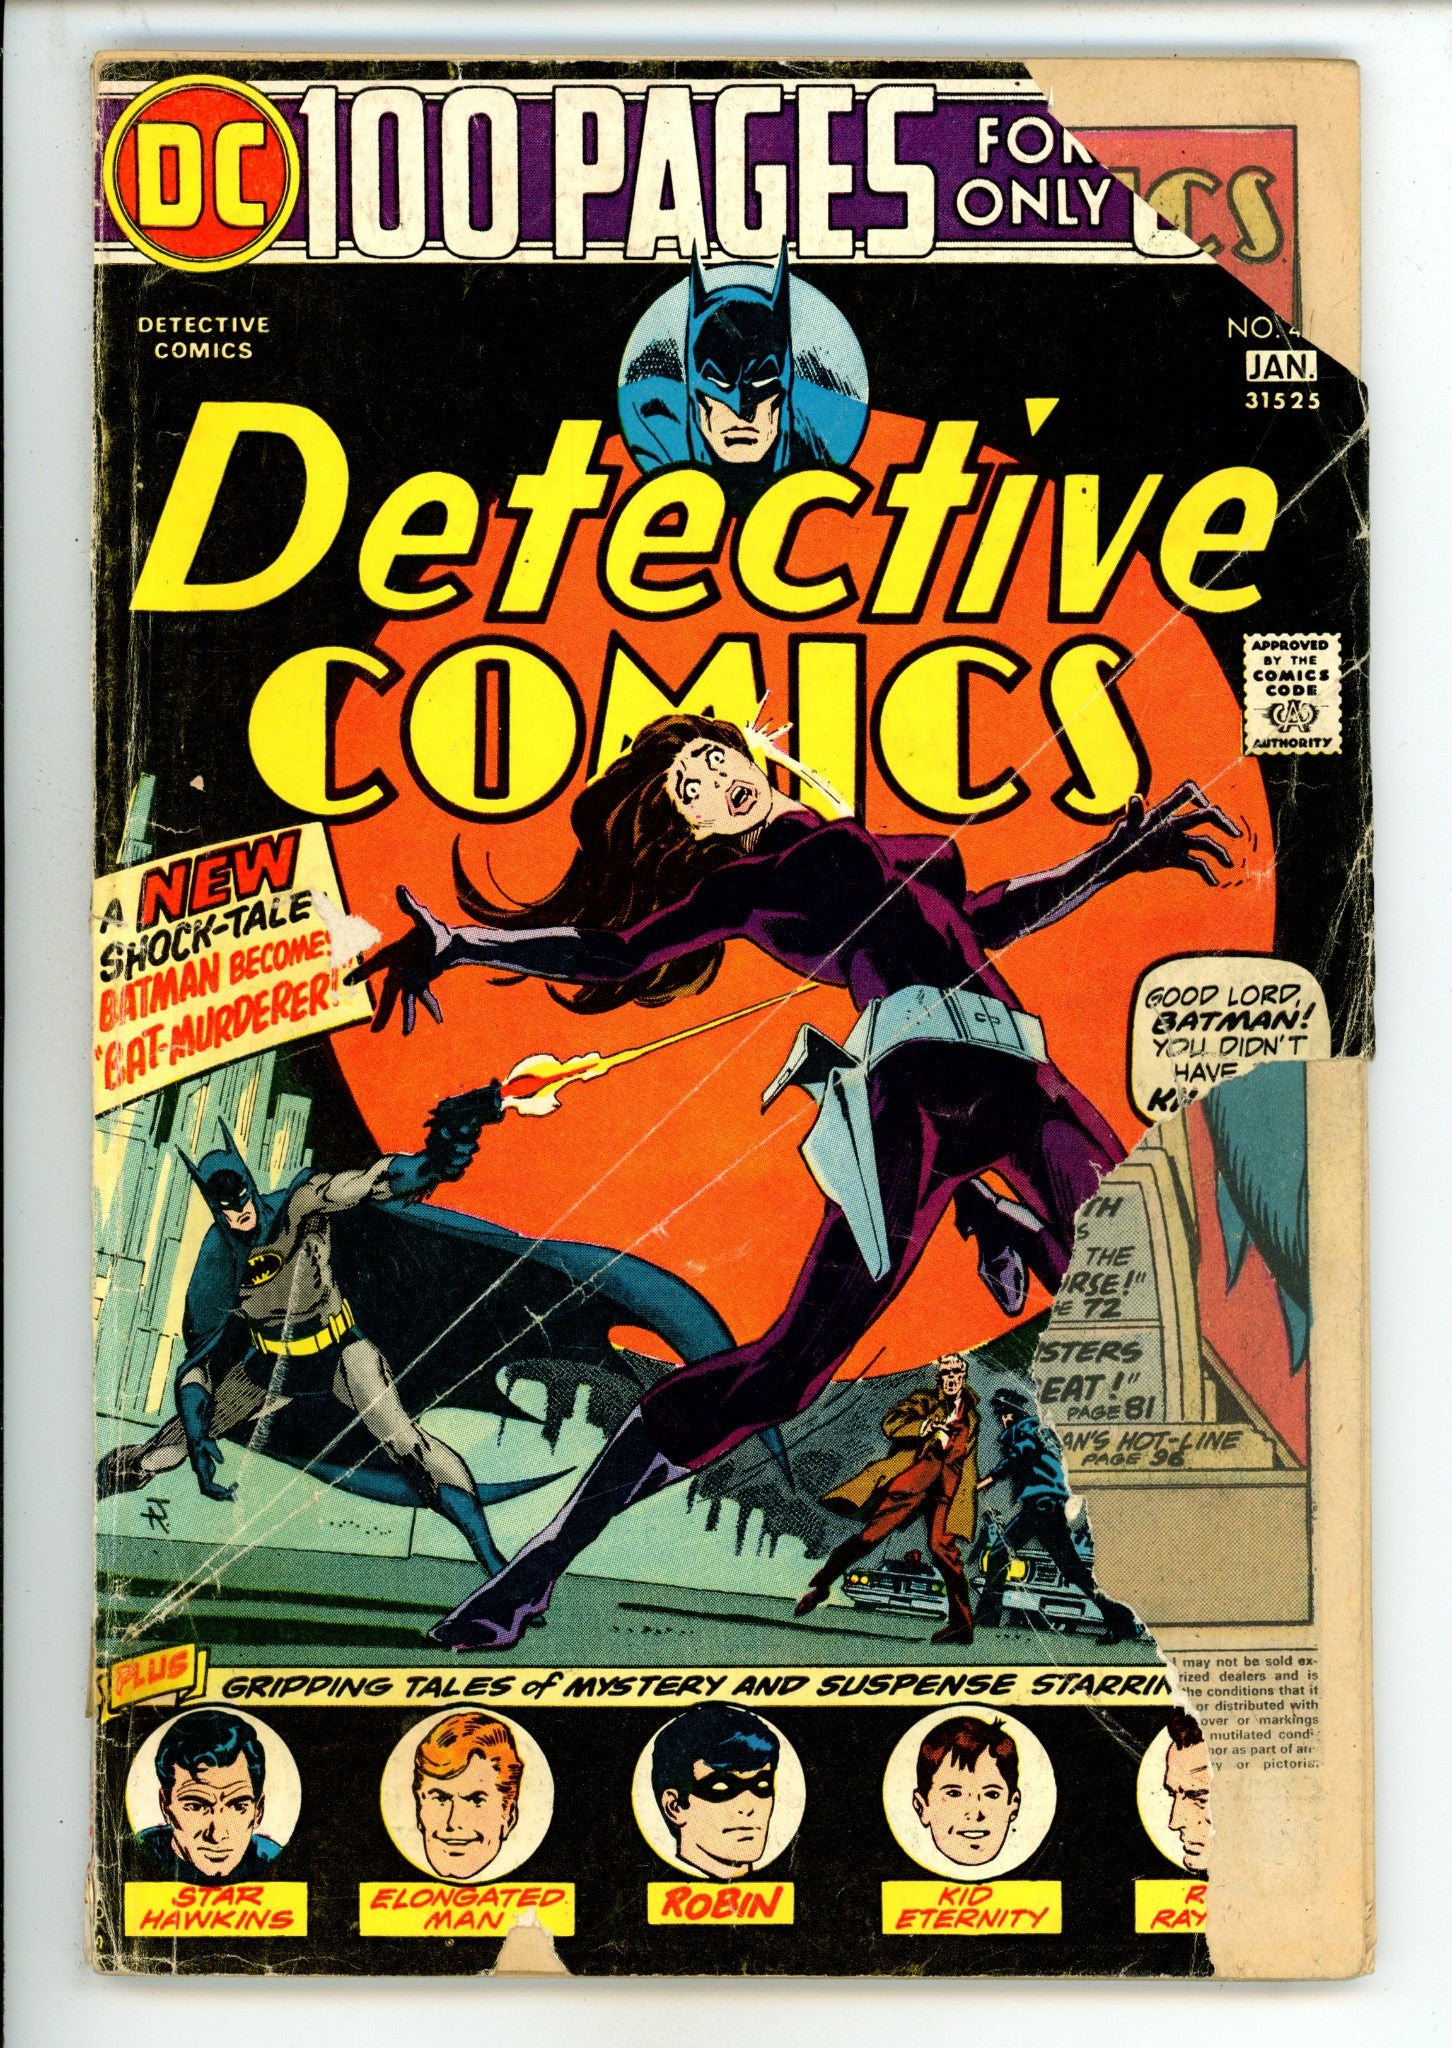 Detective Comics Vol 1 444 PR (0.5) Cover Detached (1974) 